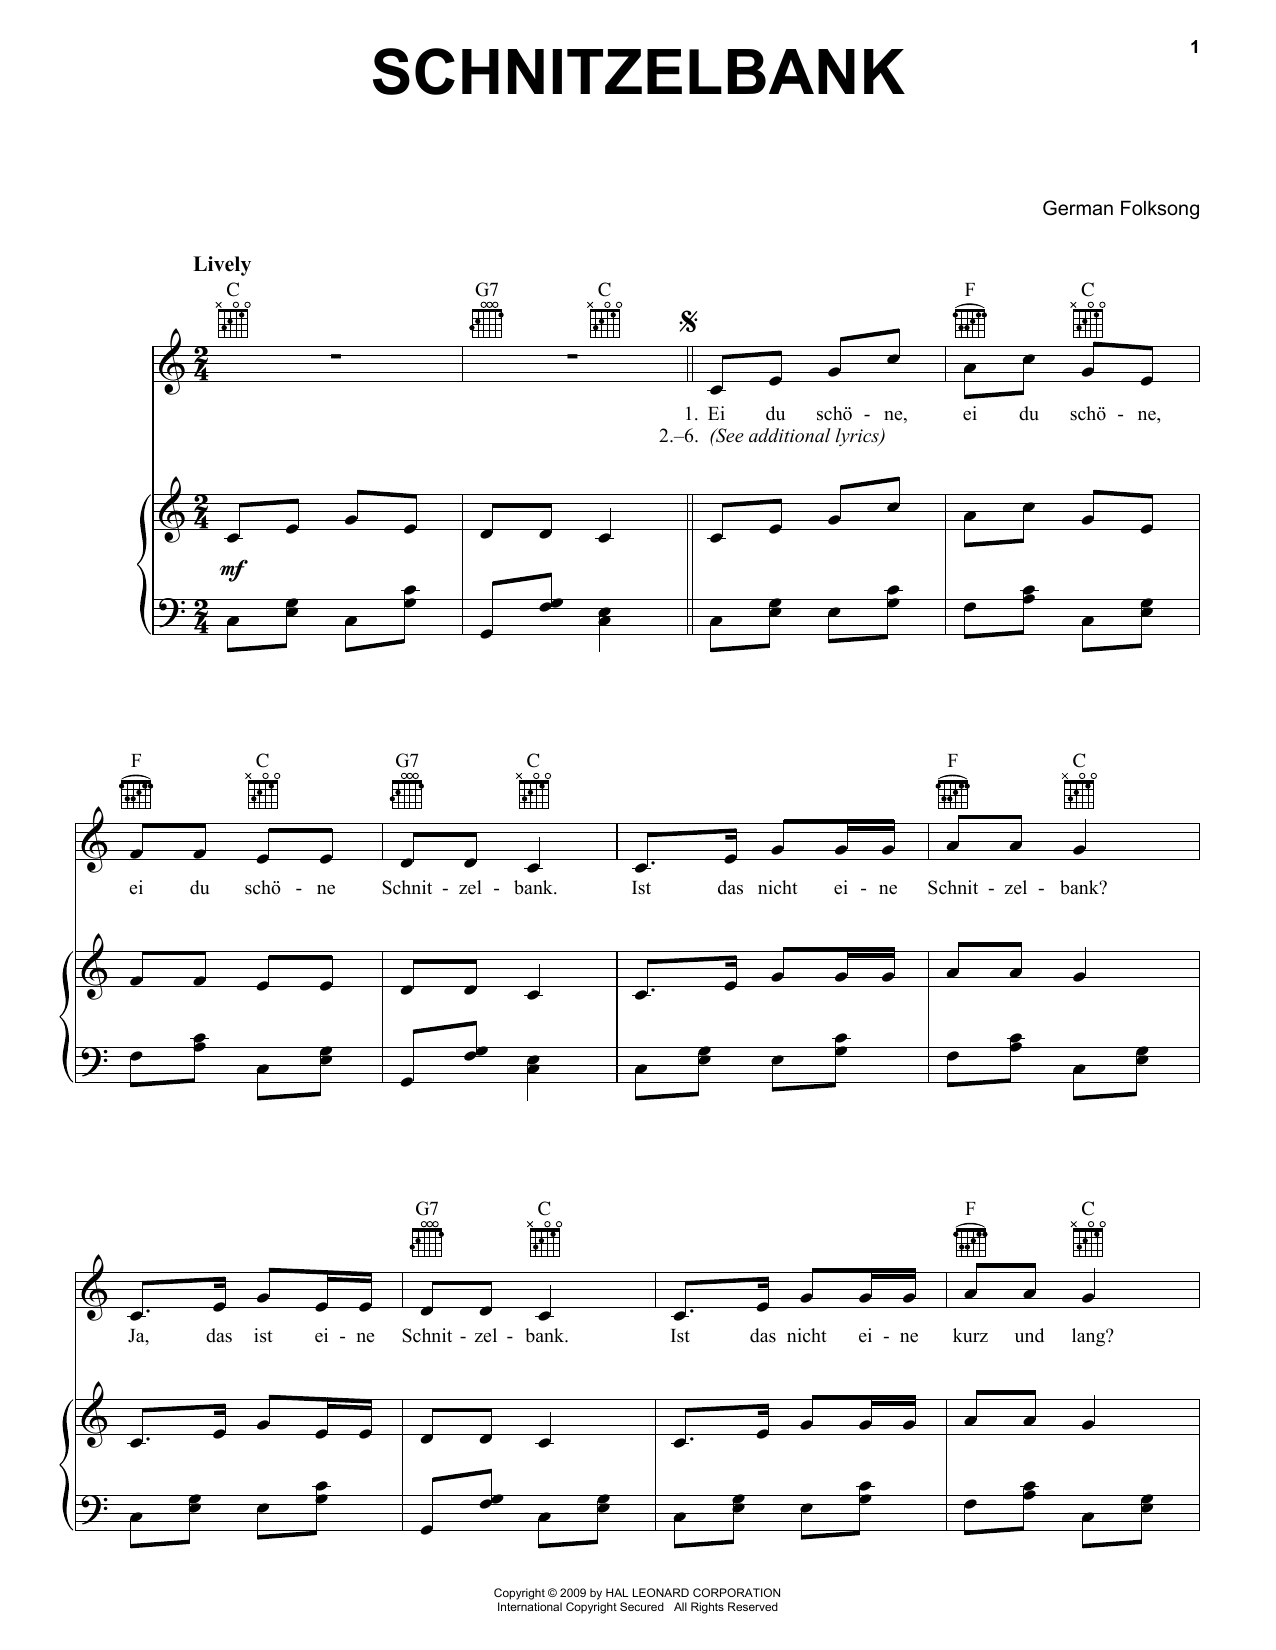 Download German Folk Song Schnitzelbank Sheet Music